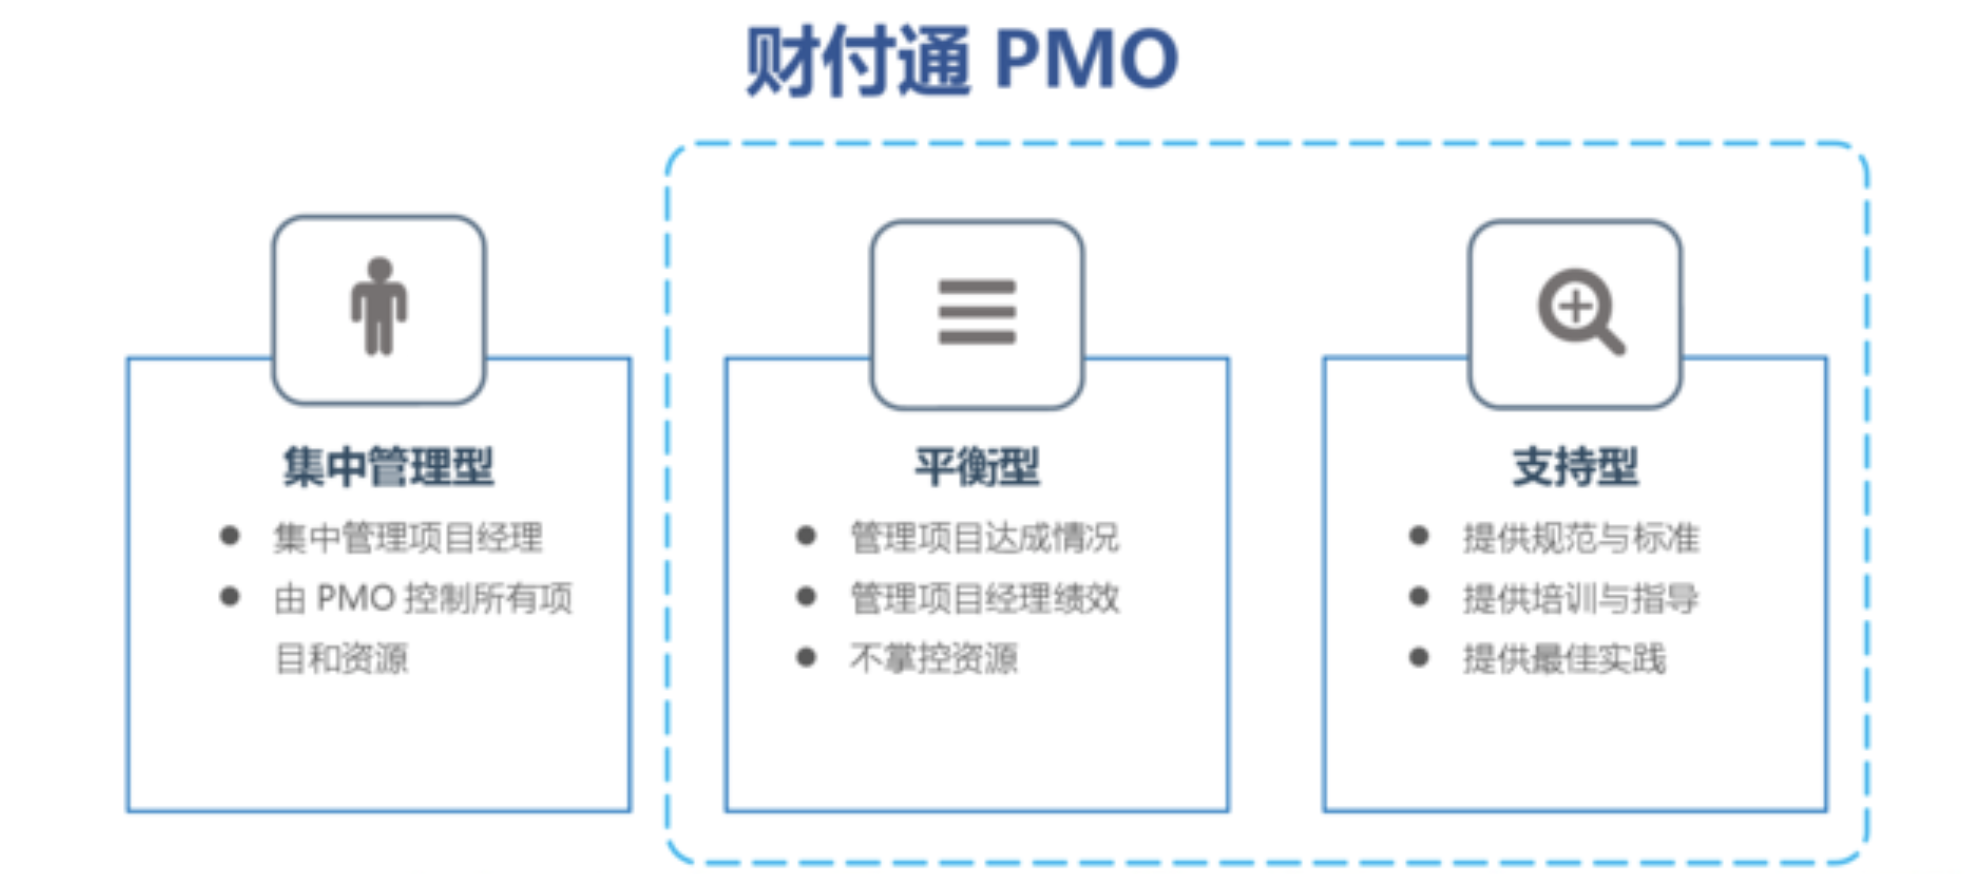 MPD：财付通——标准化项目管理与敏捷迭代的兼得——互联网PMO与项目管理实践  项目管理 管理 产品经理 产品 第1张